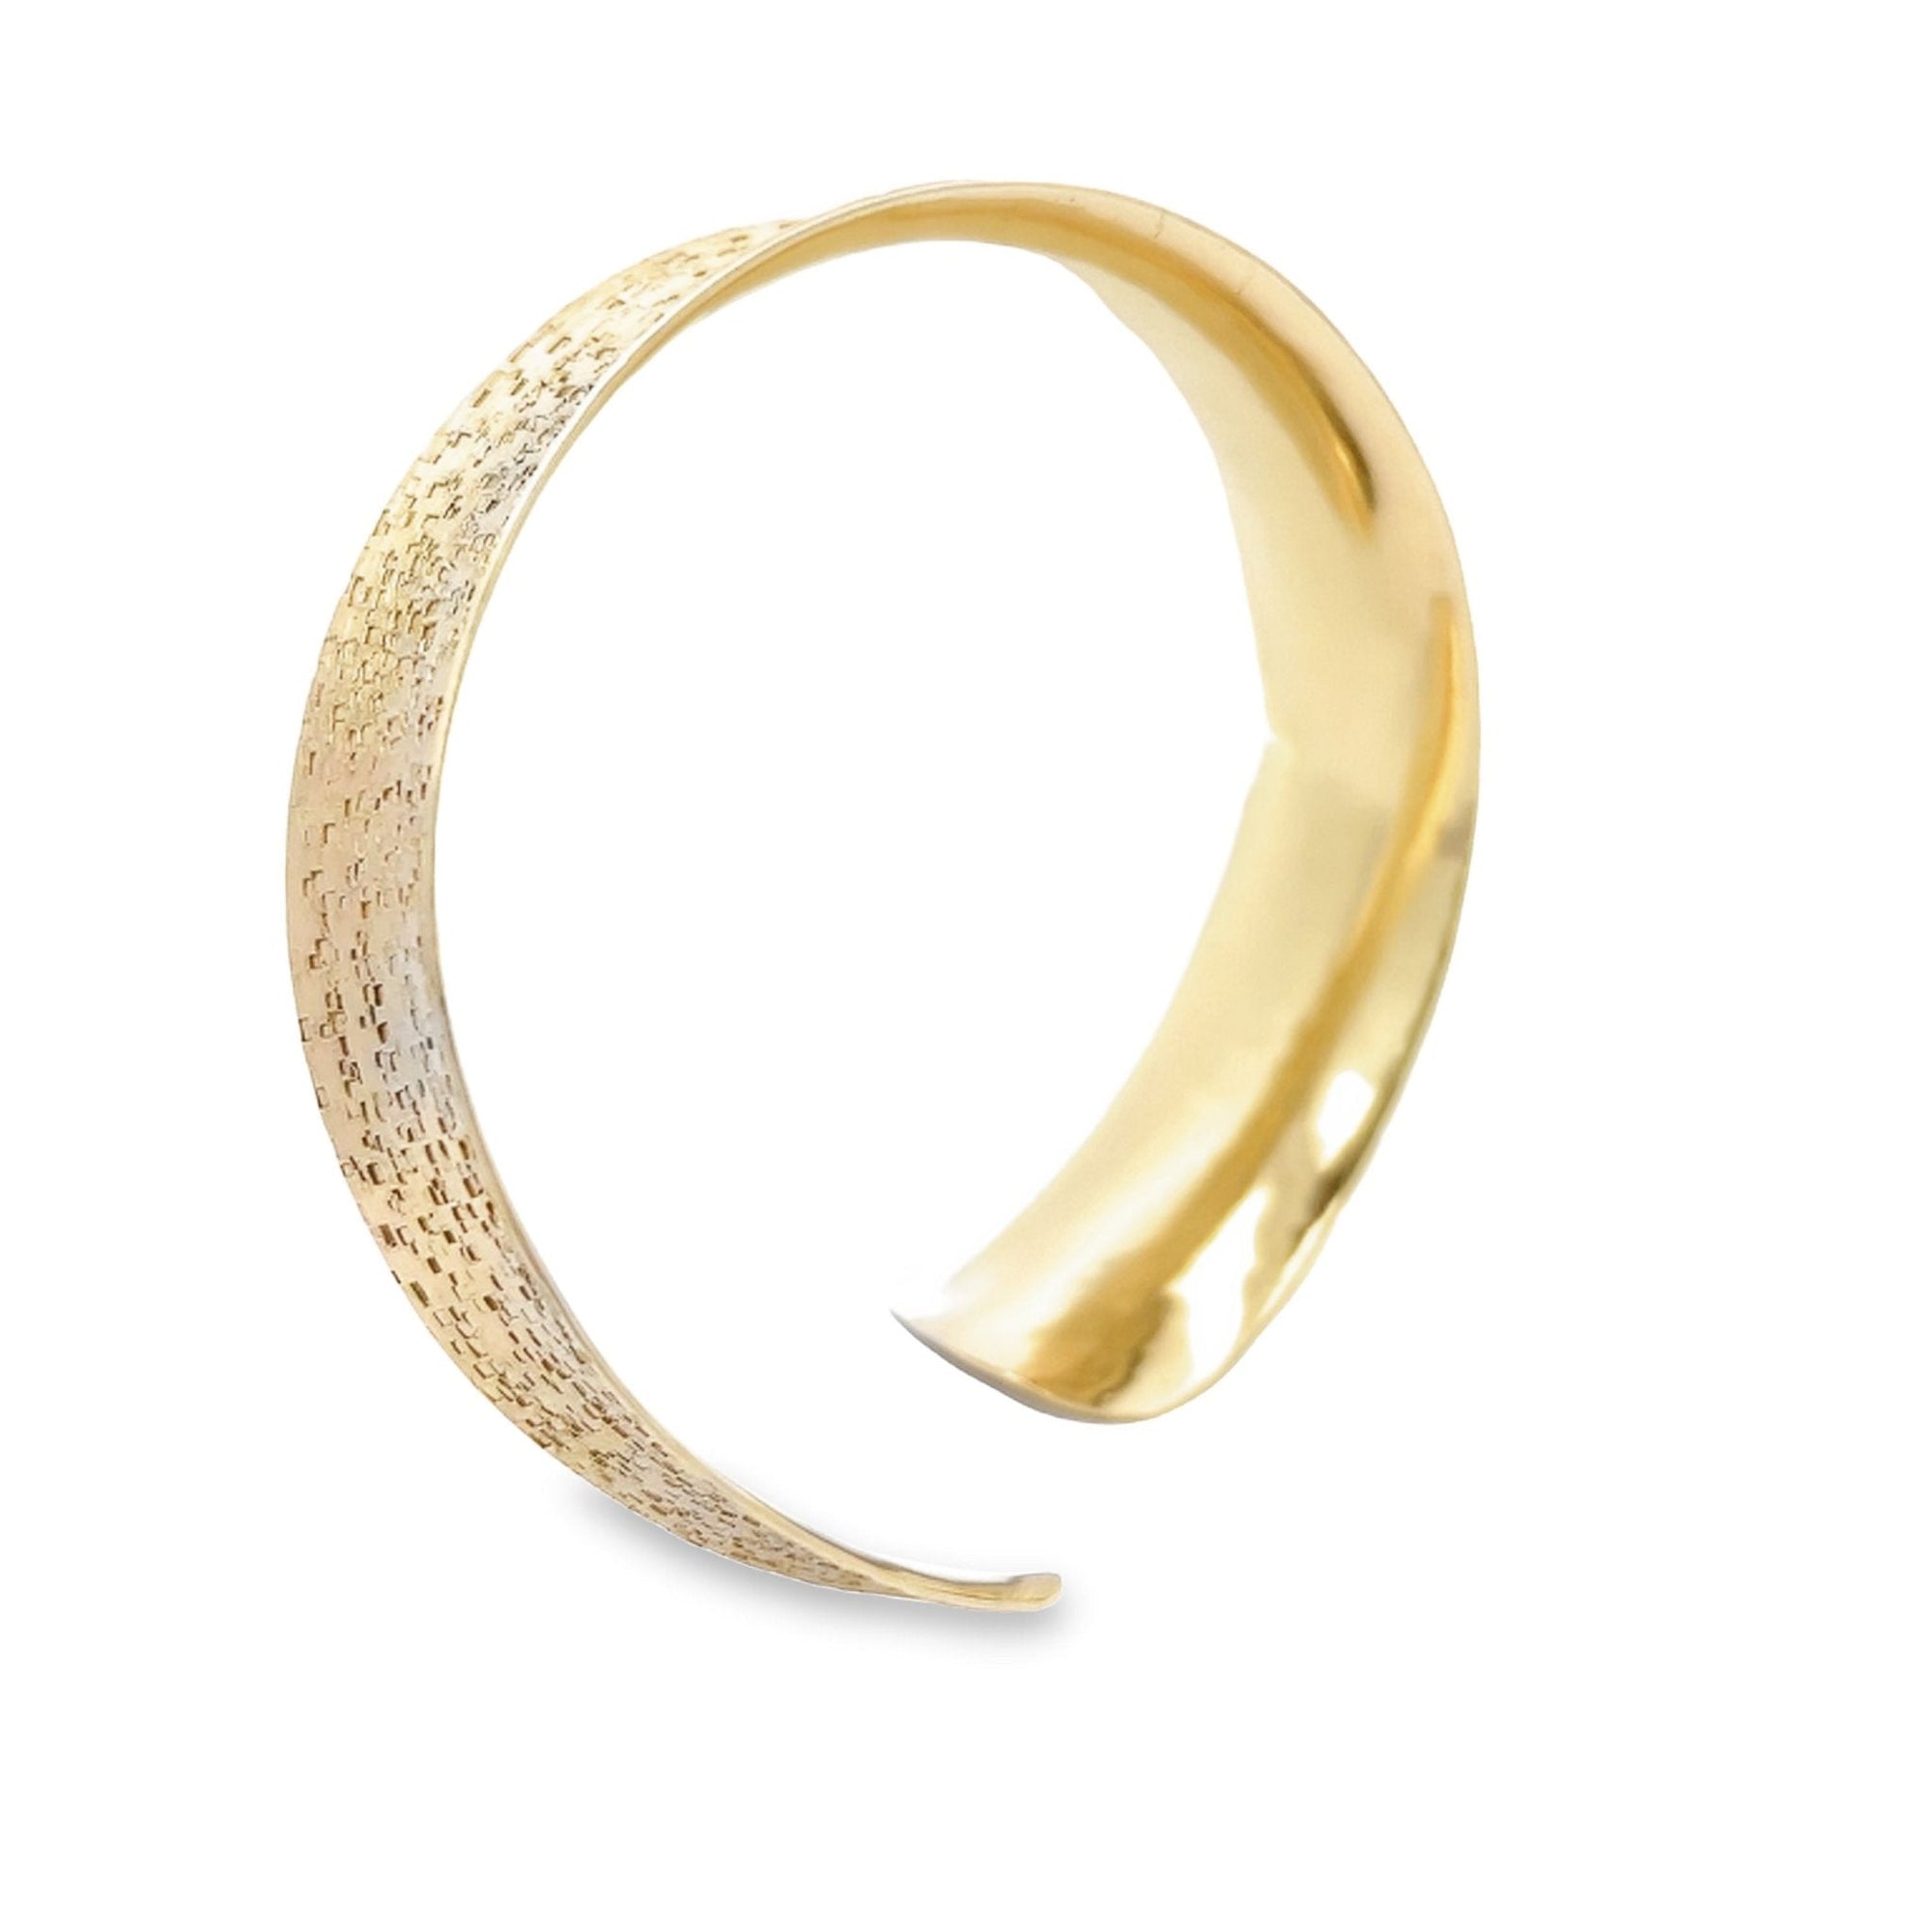 Shape of 14K Gold Texturized Anticlastic Bangle Bracelet